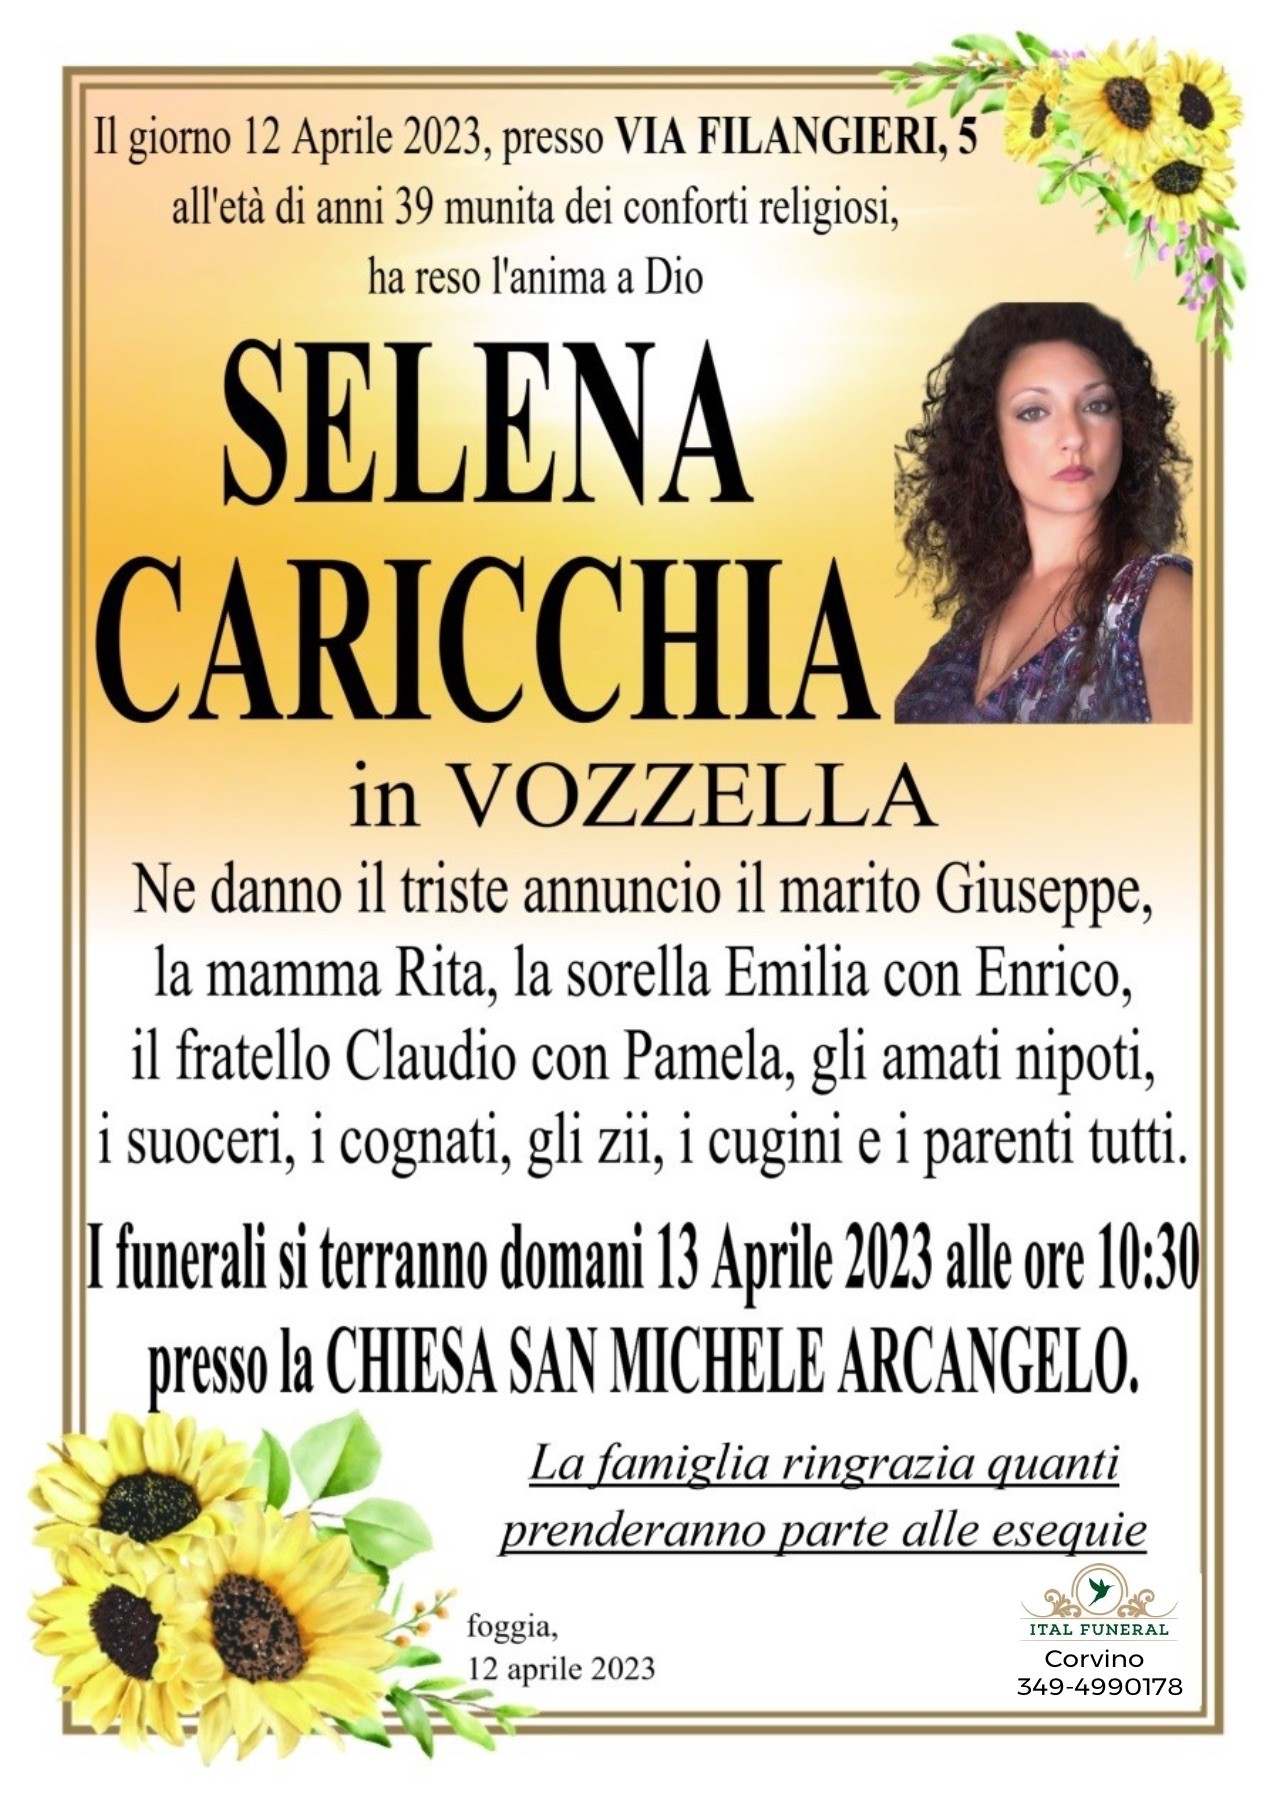 Selena Caricchia